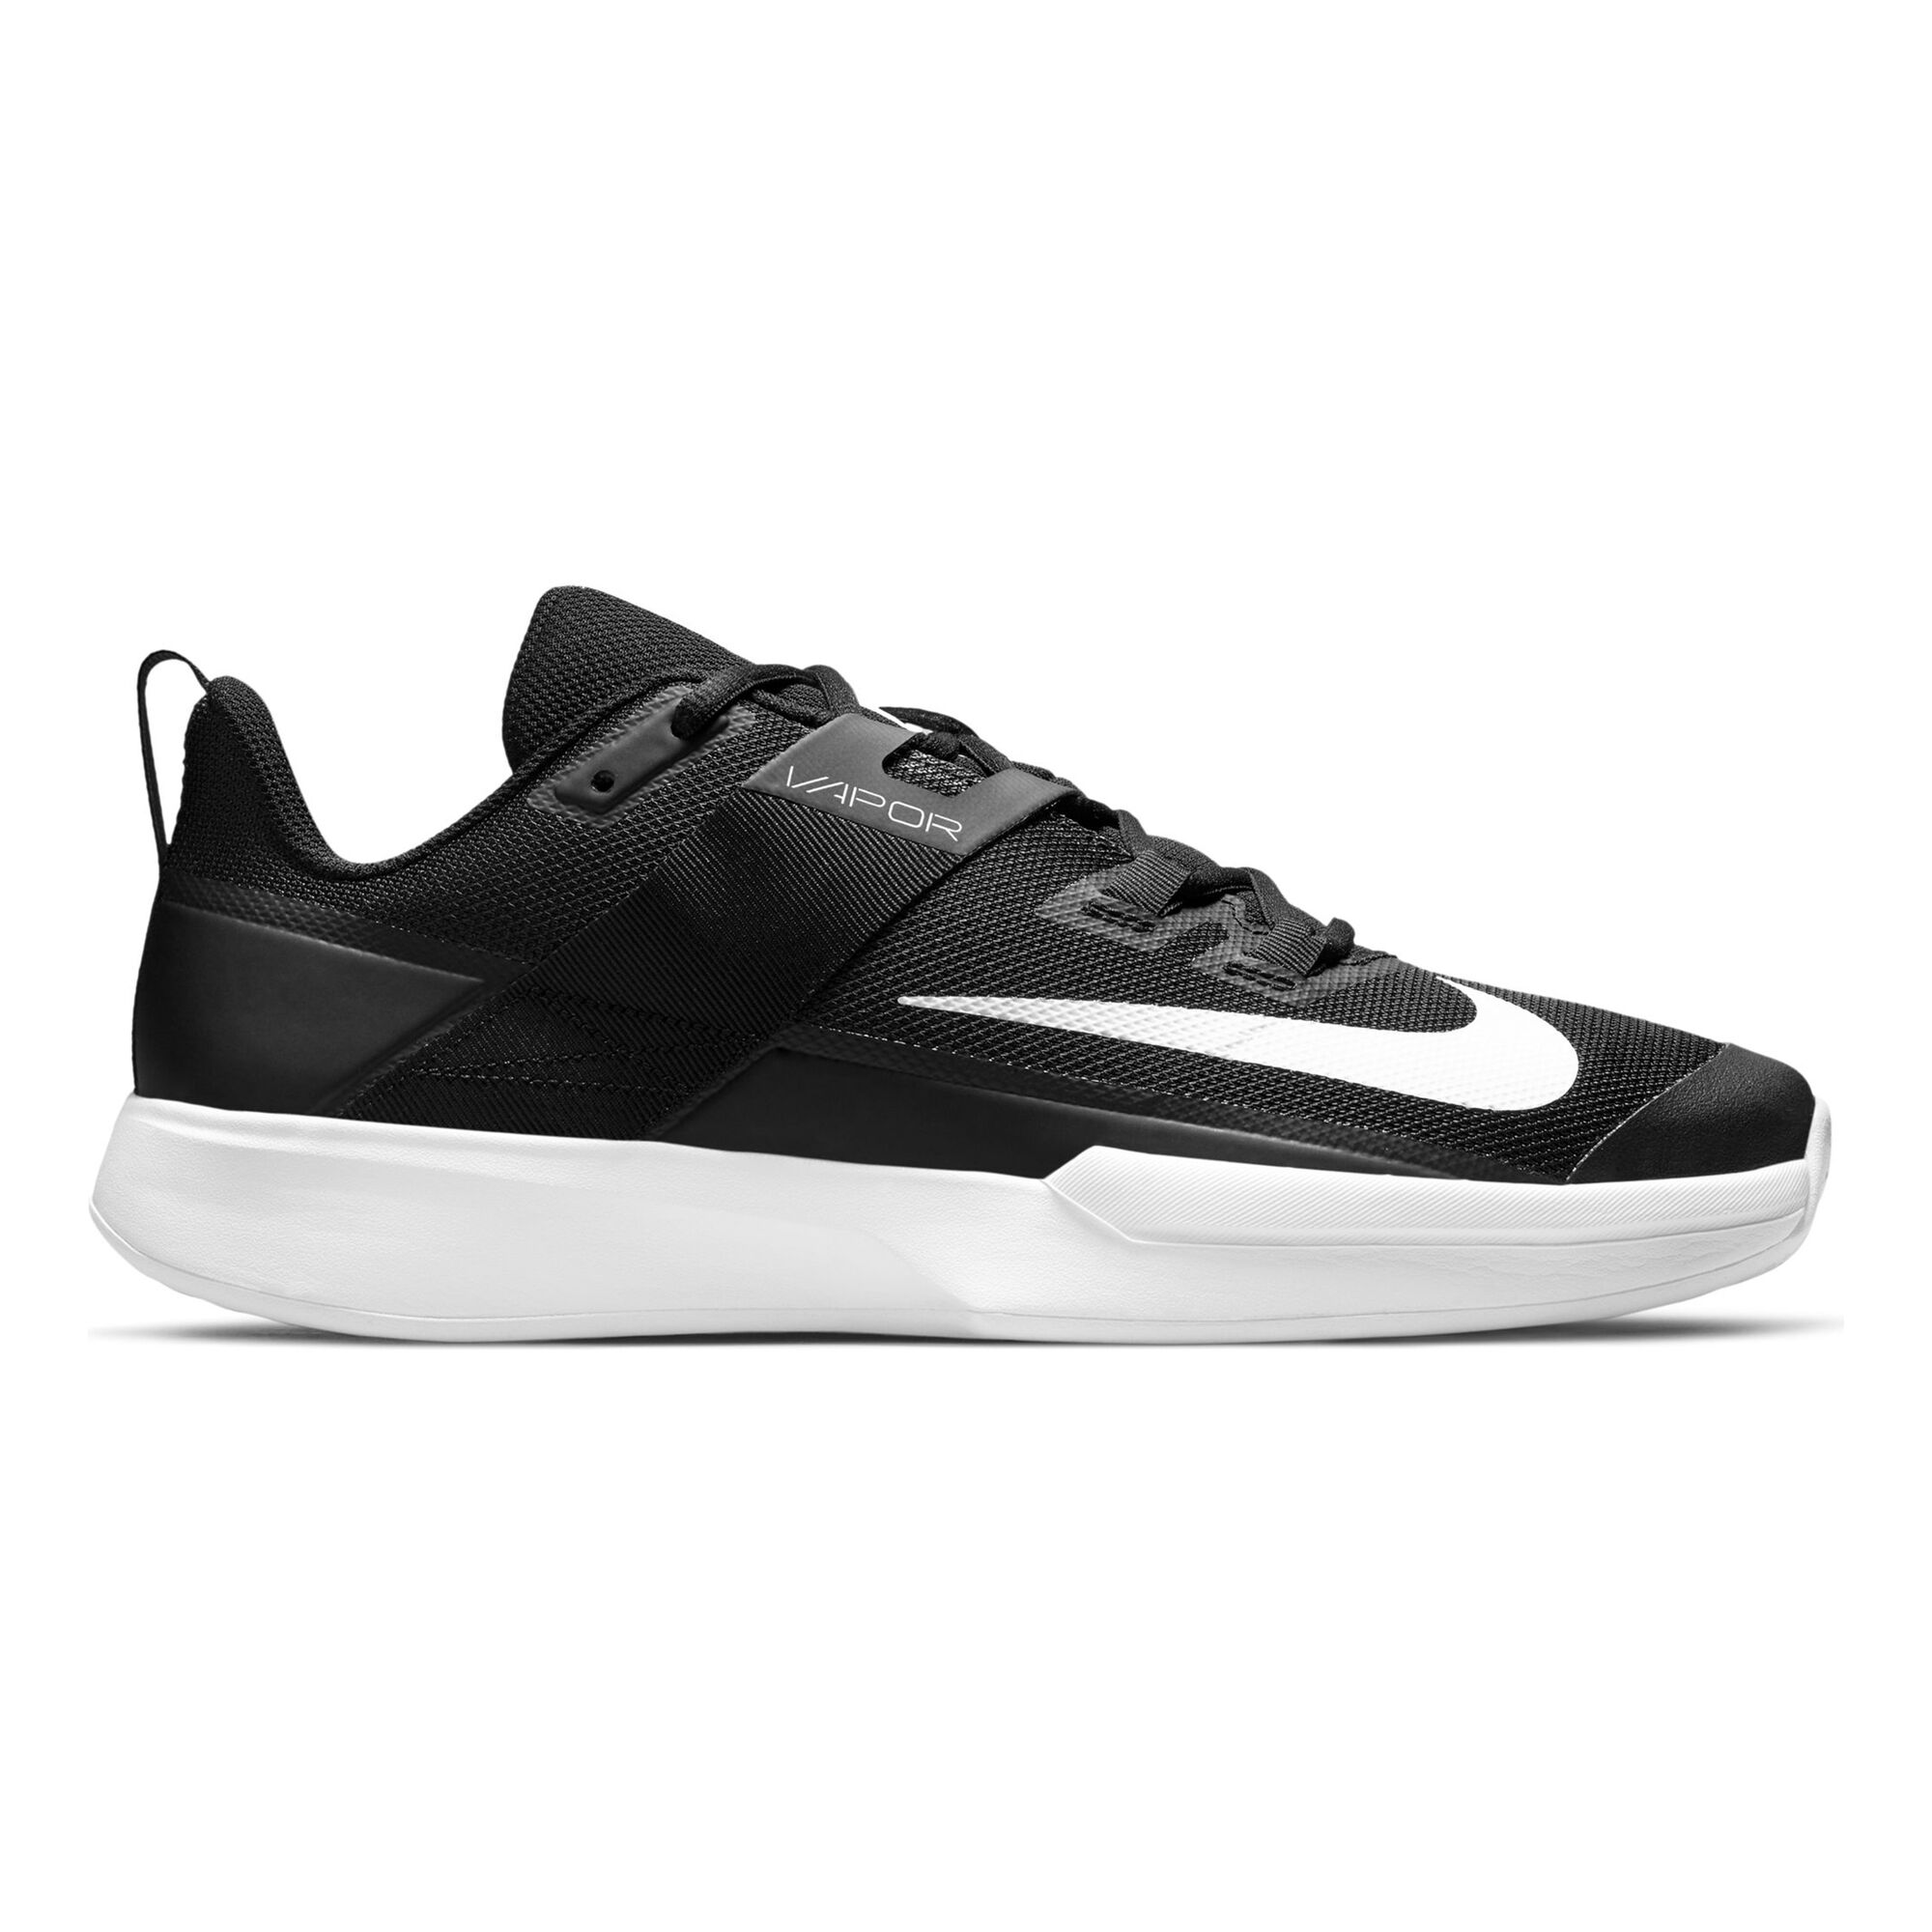 Muslo Verdulero bolita Nike Court Vapor Lite All Court Shoe Men - Black, White online | Padel-Point